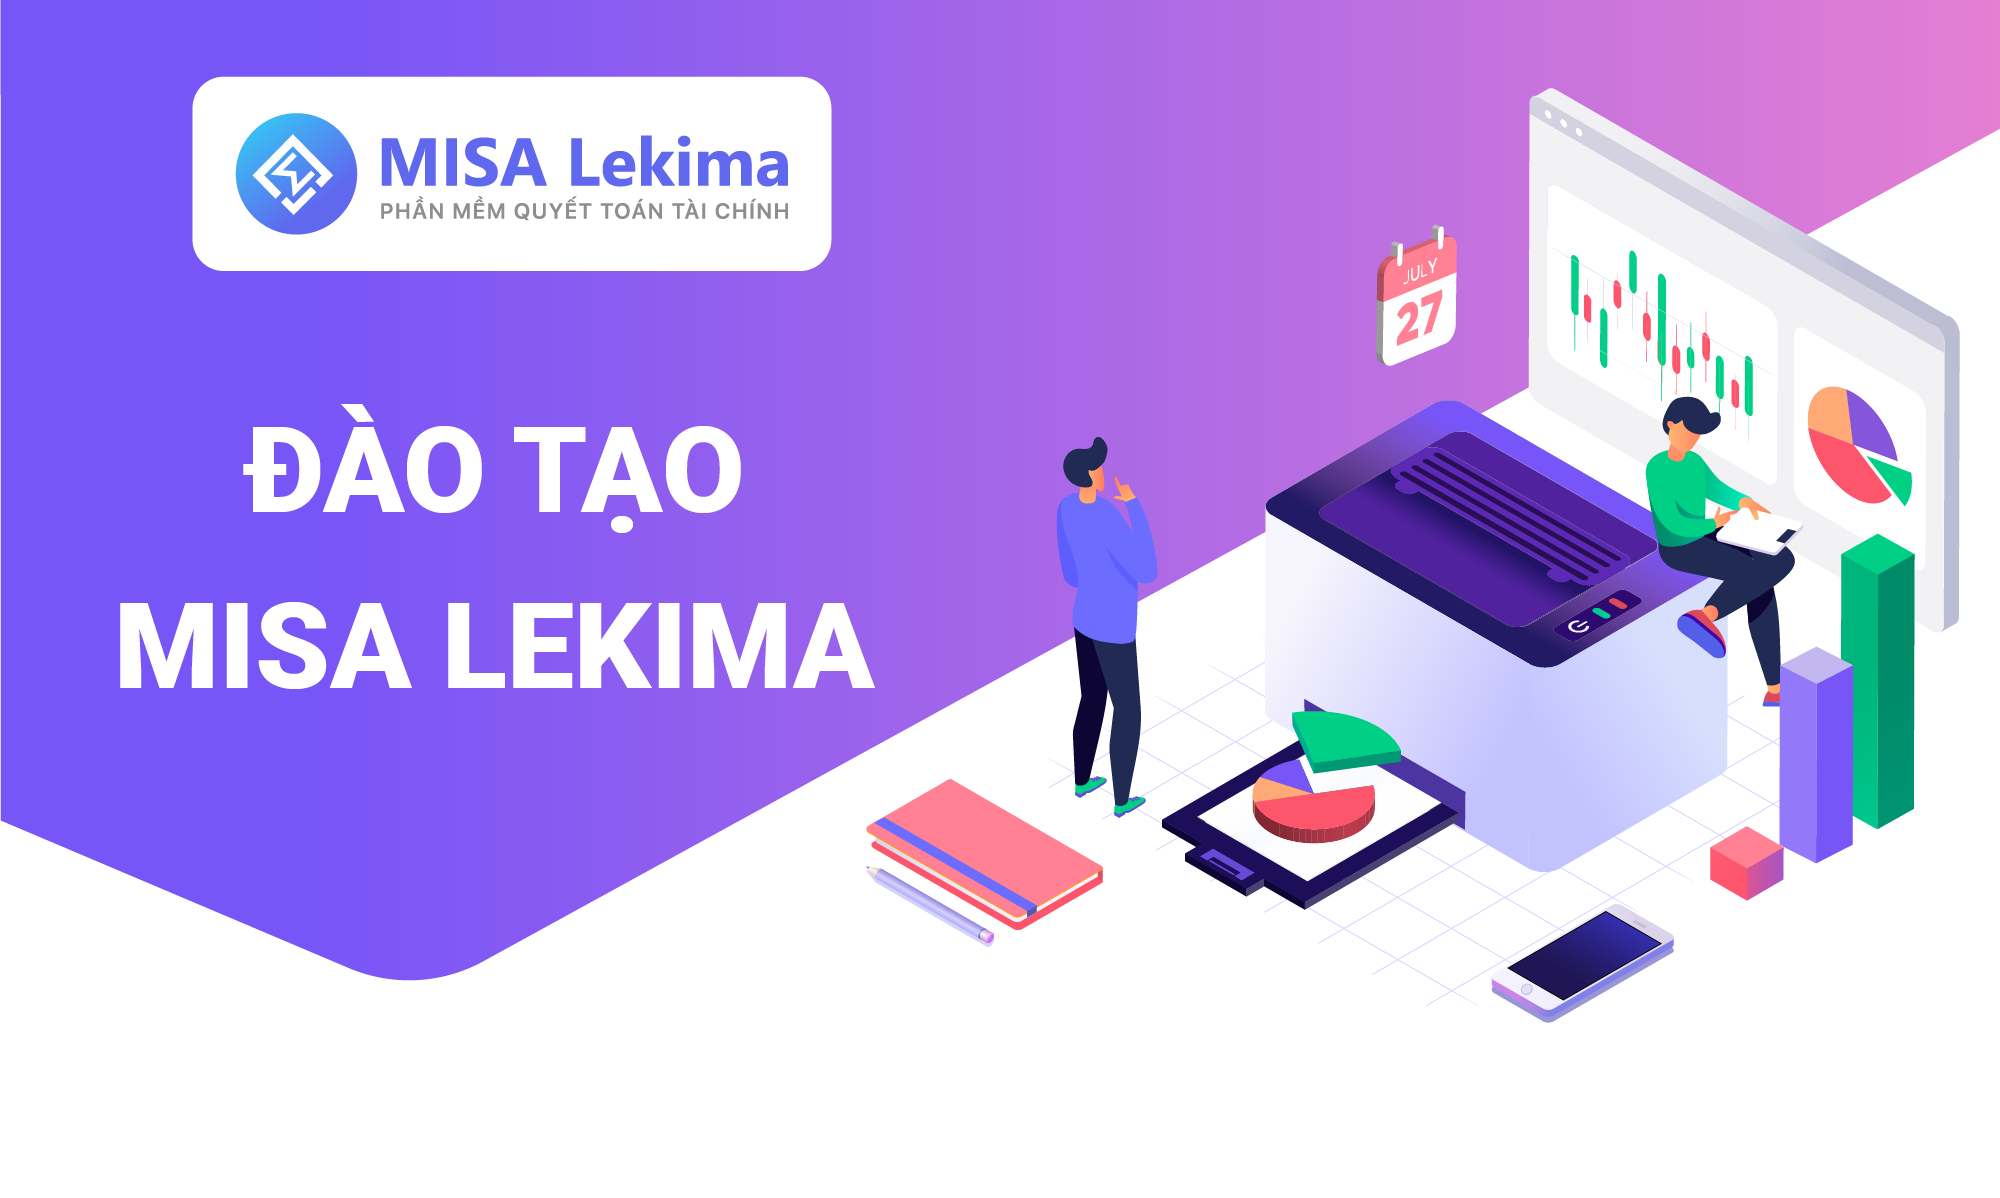 MISA Lekima - Hướng dẫn phần mềm Quyết toán tài chính